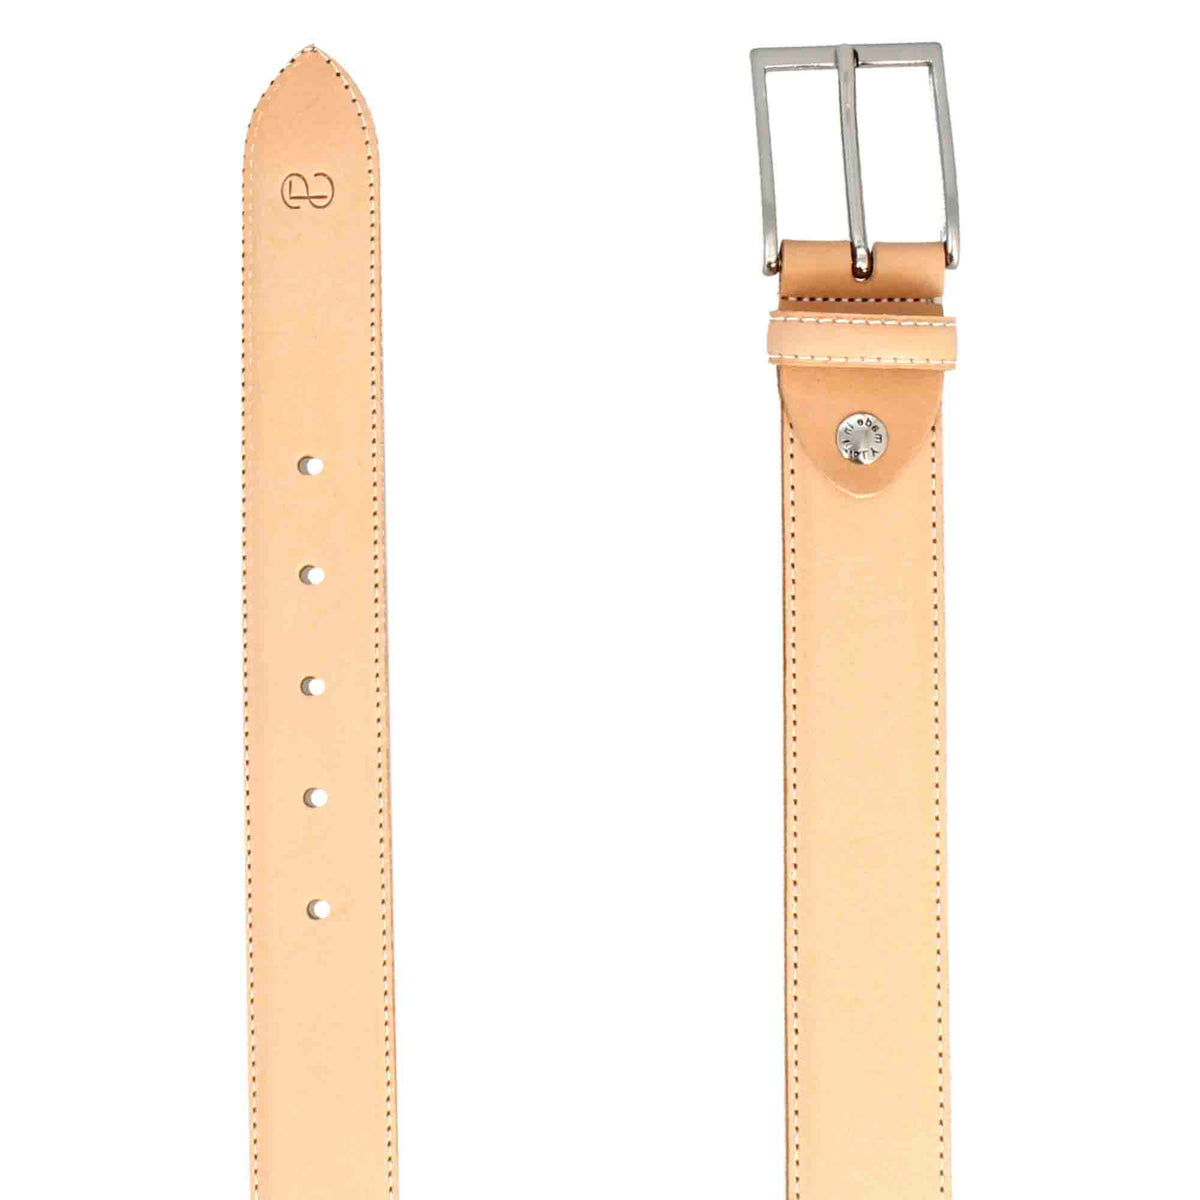 Men's belt in natural color full grain leather